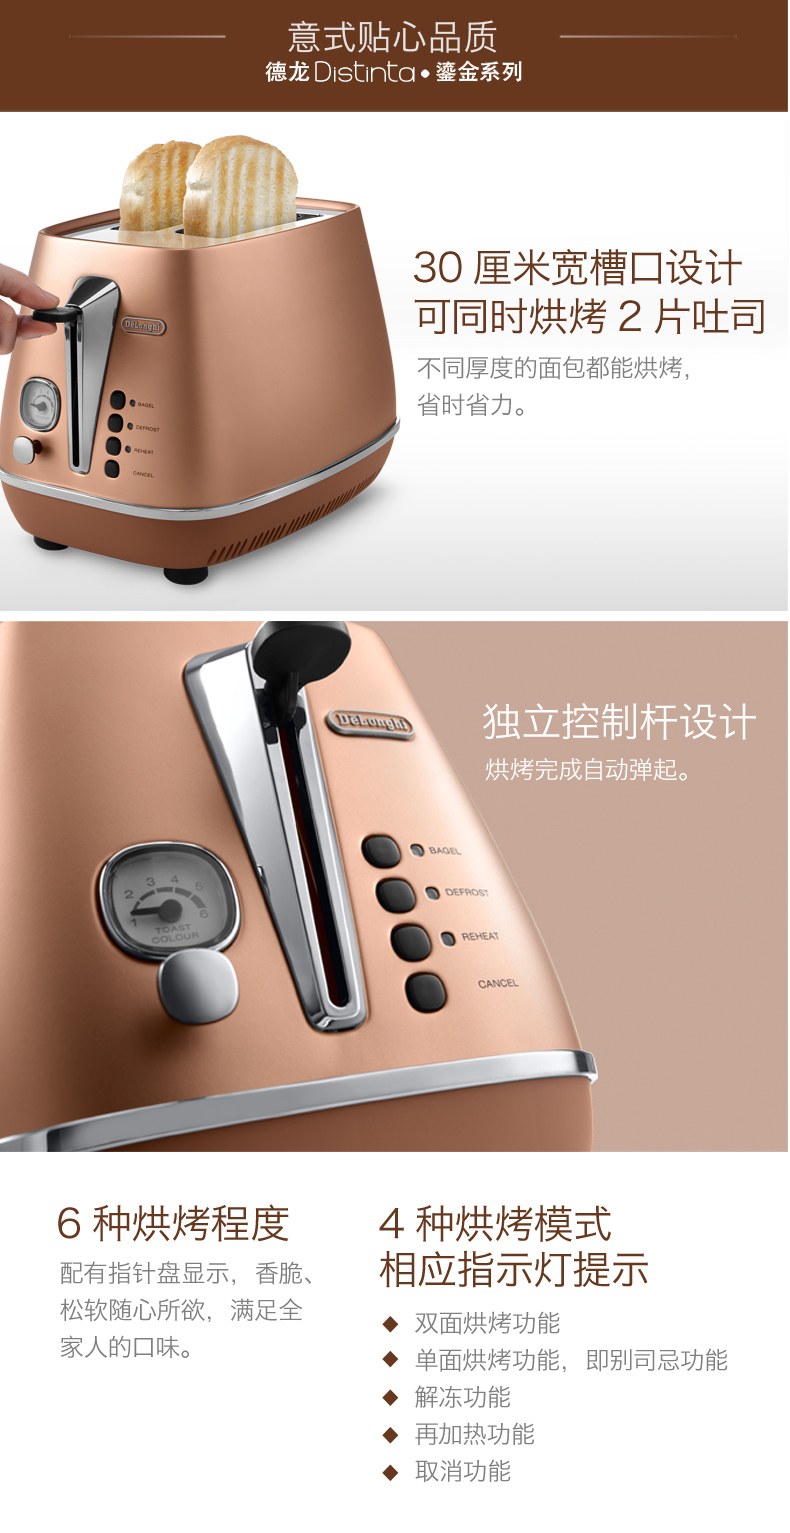 德龙（DeLonghi）Distinta系列 CTI2003.CP 家用2片式多士炉吐司机烤面包机